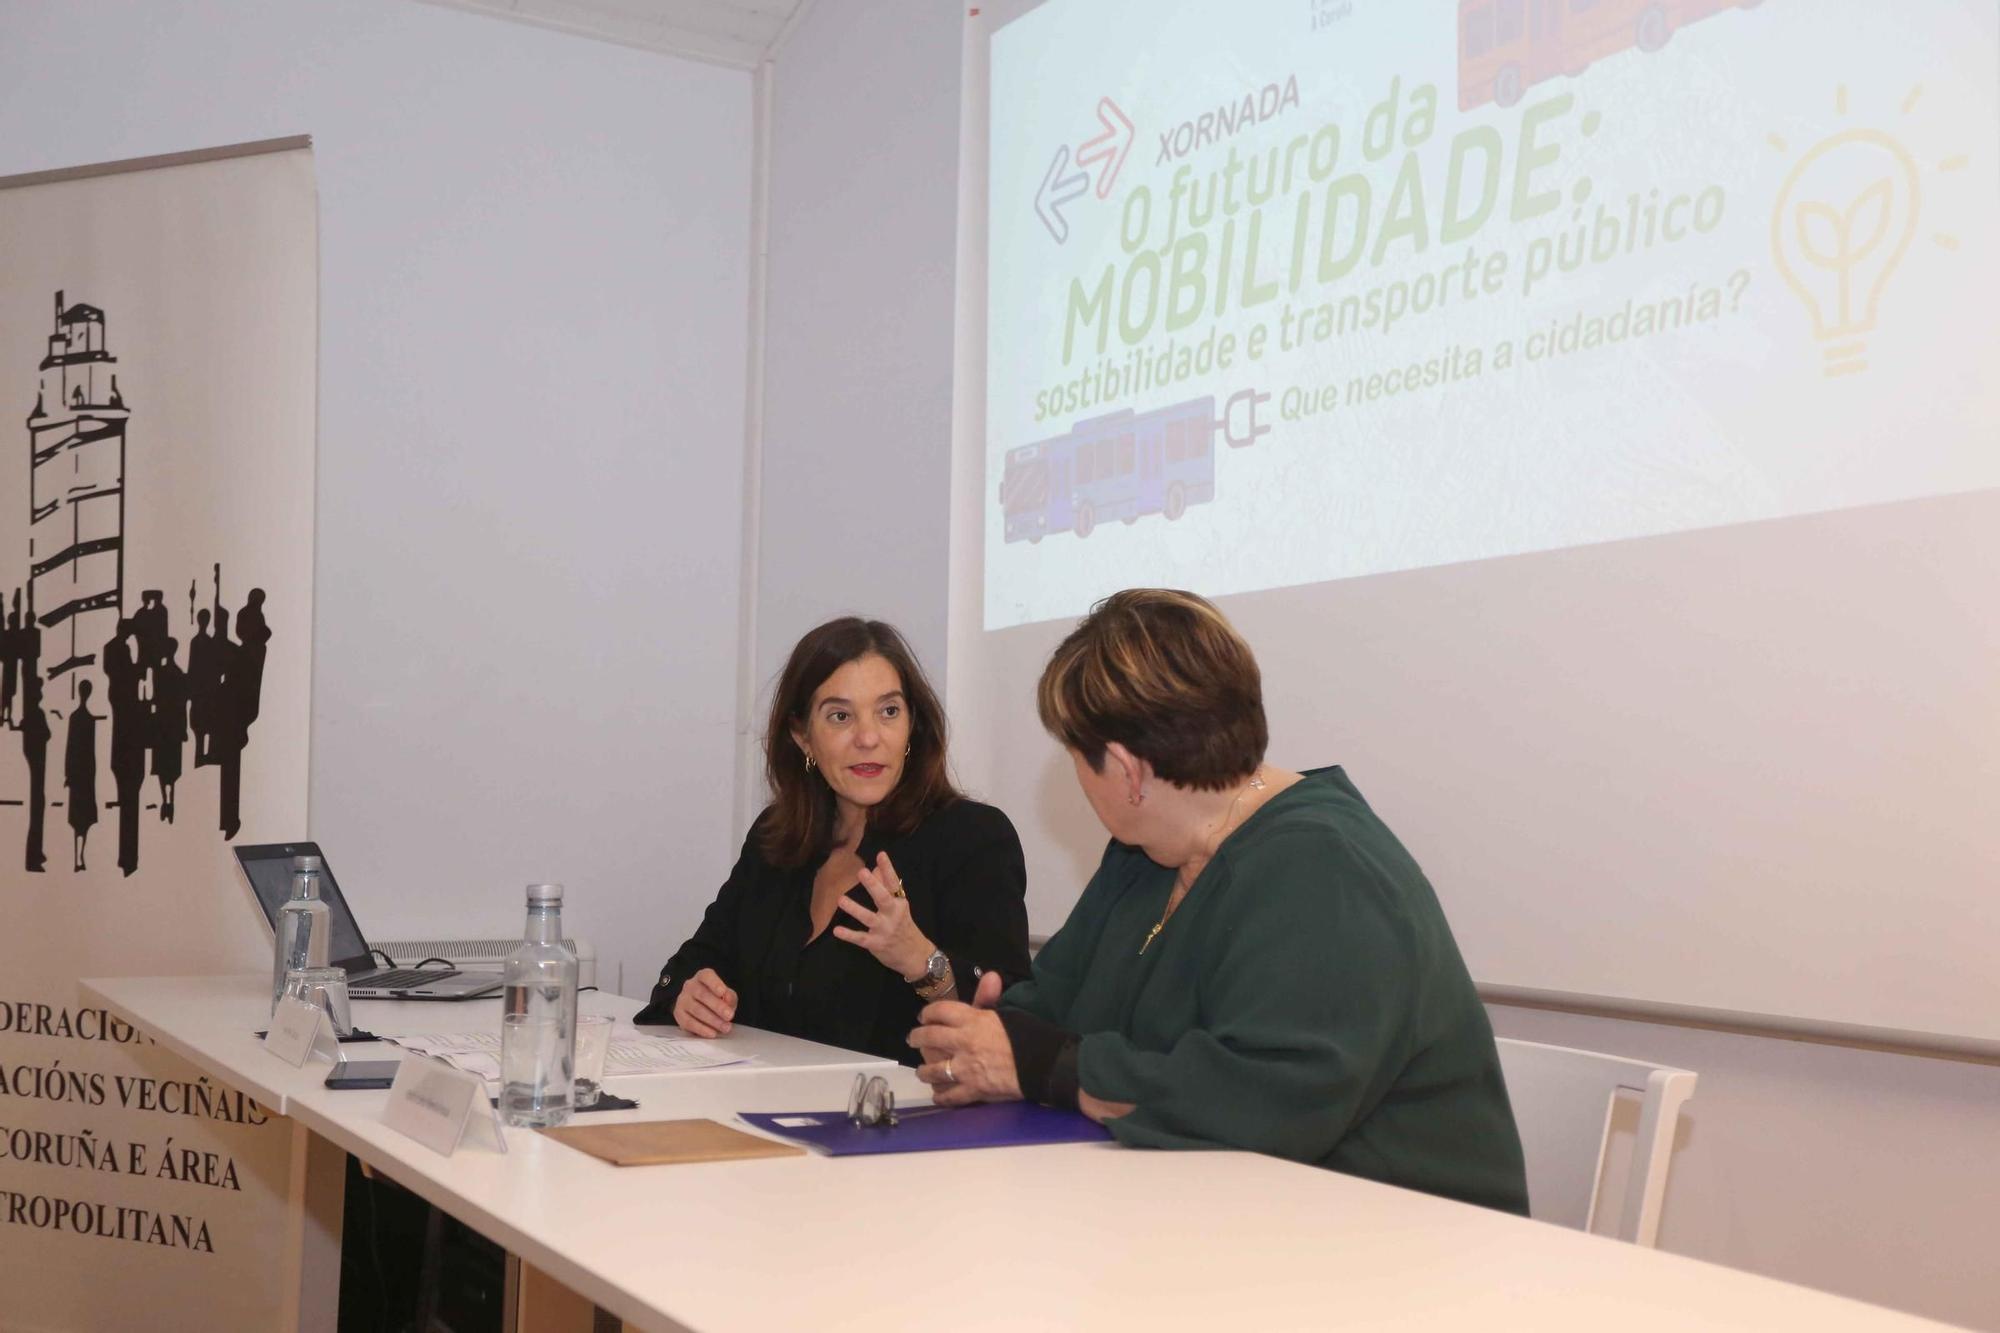 Jornada 'O futuro da mobilidade: sostenibilidade e transporte público' en A Coruña